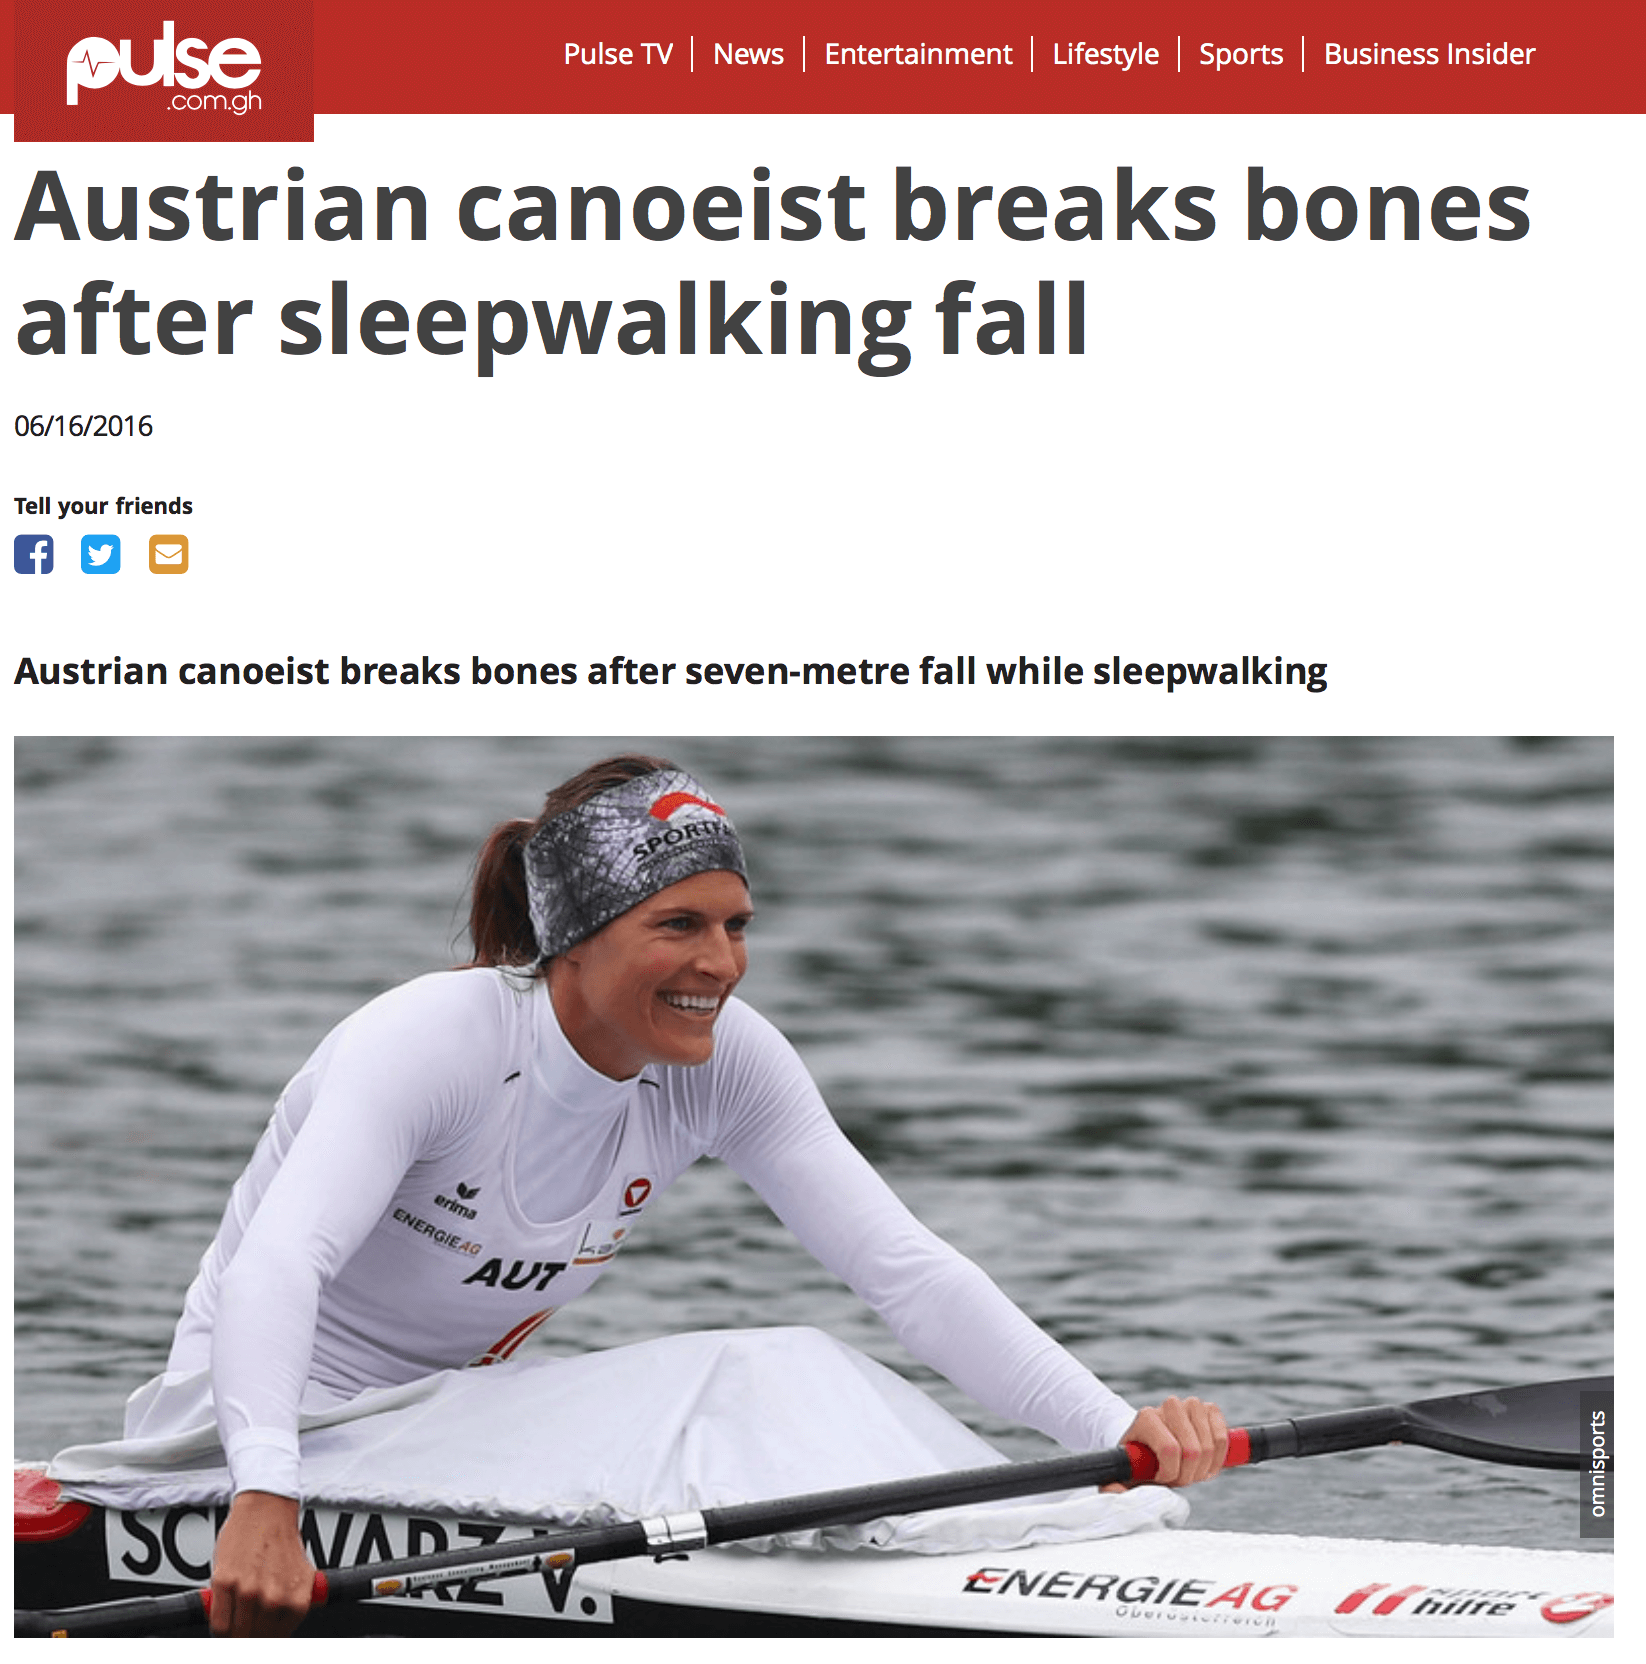 Austrian canoeist breaks bones after sleepwalking fall